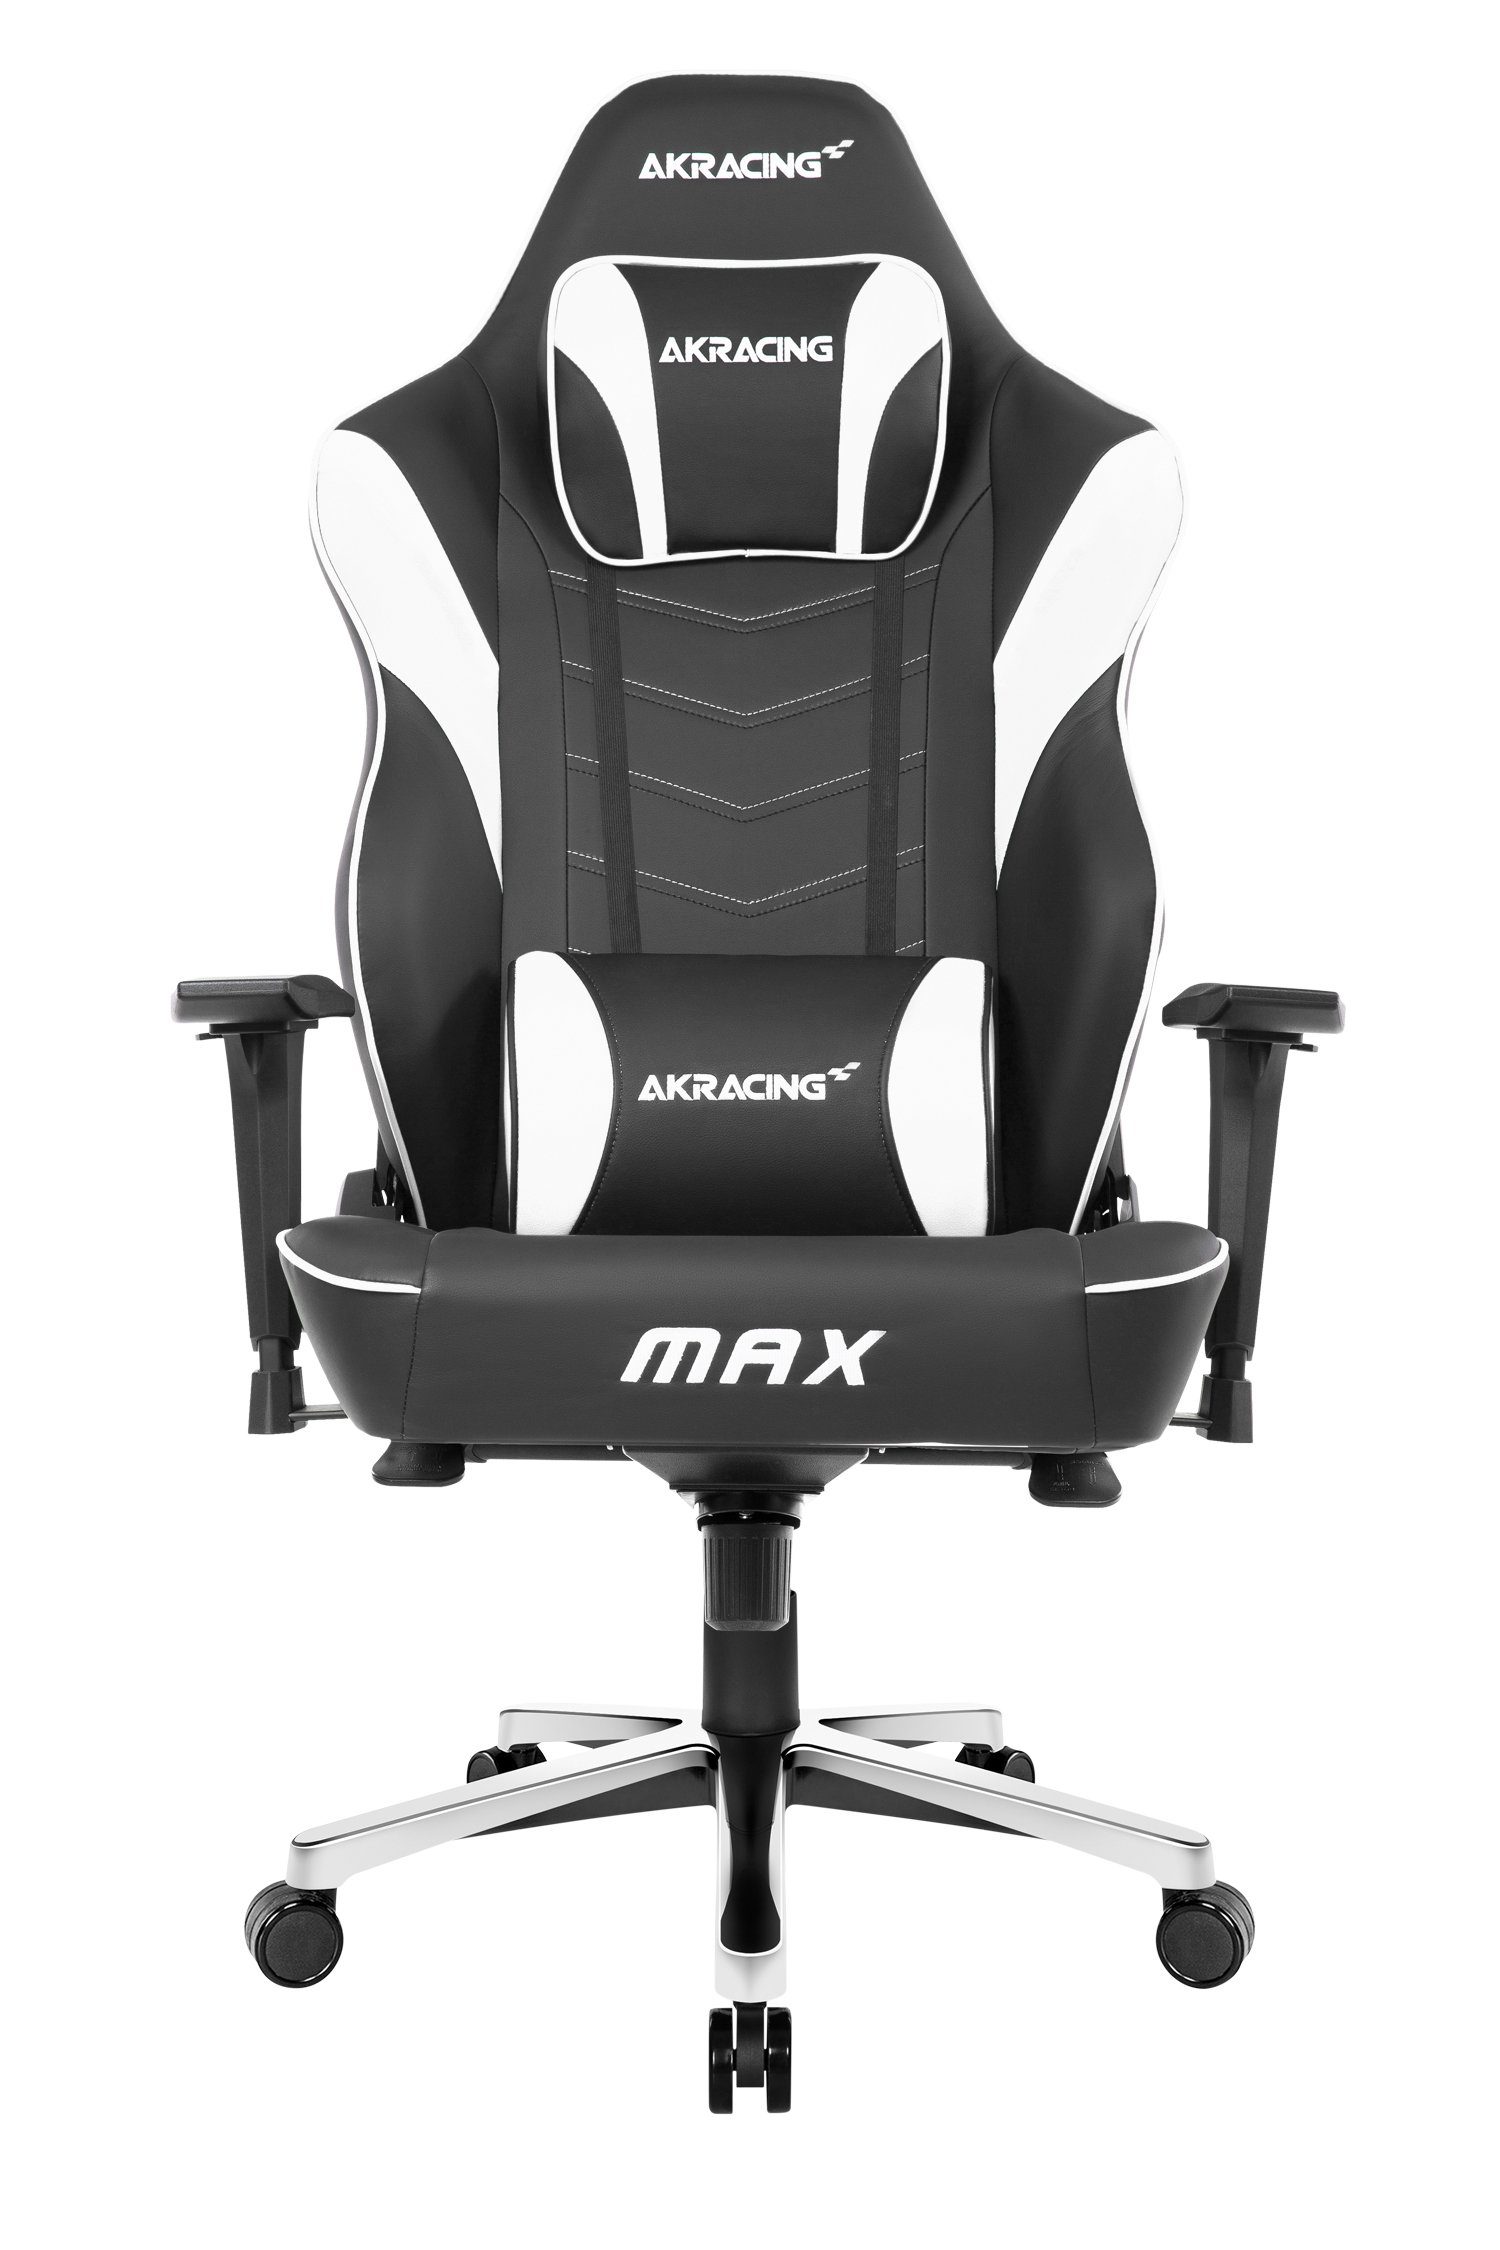 AKRacing Gaming-Stuhl "AKRACING Master Max" hochwertiges Kunstleder, ergonomisch, höhenverstellbar Bürostuhl für große und schwere Personen weiß